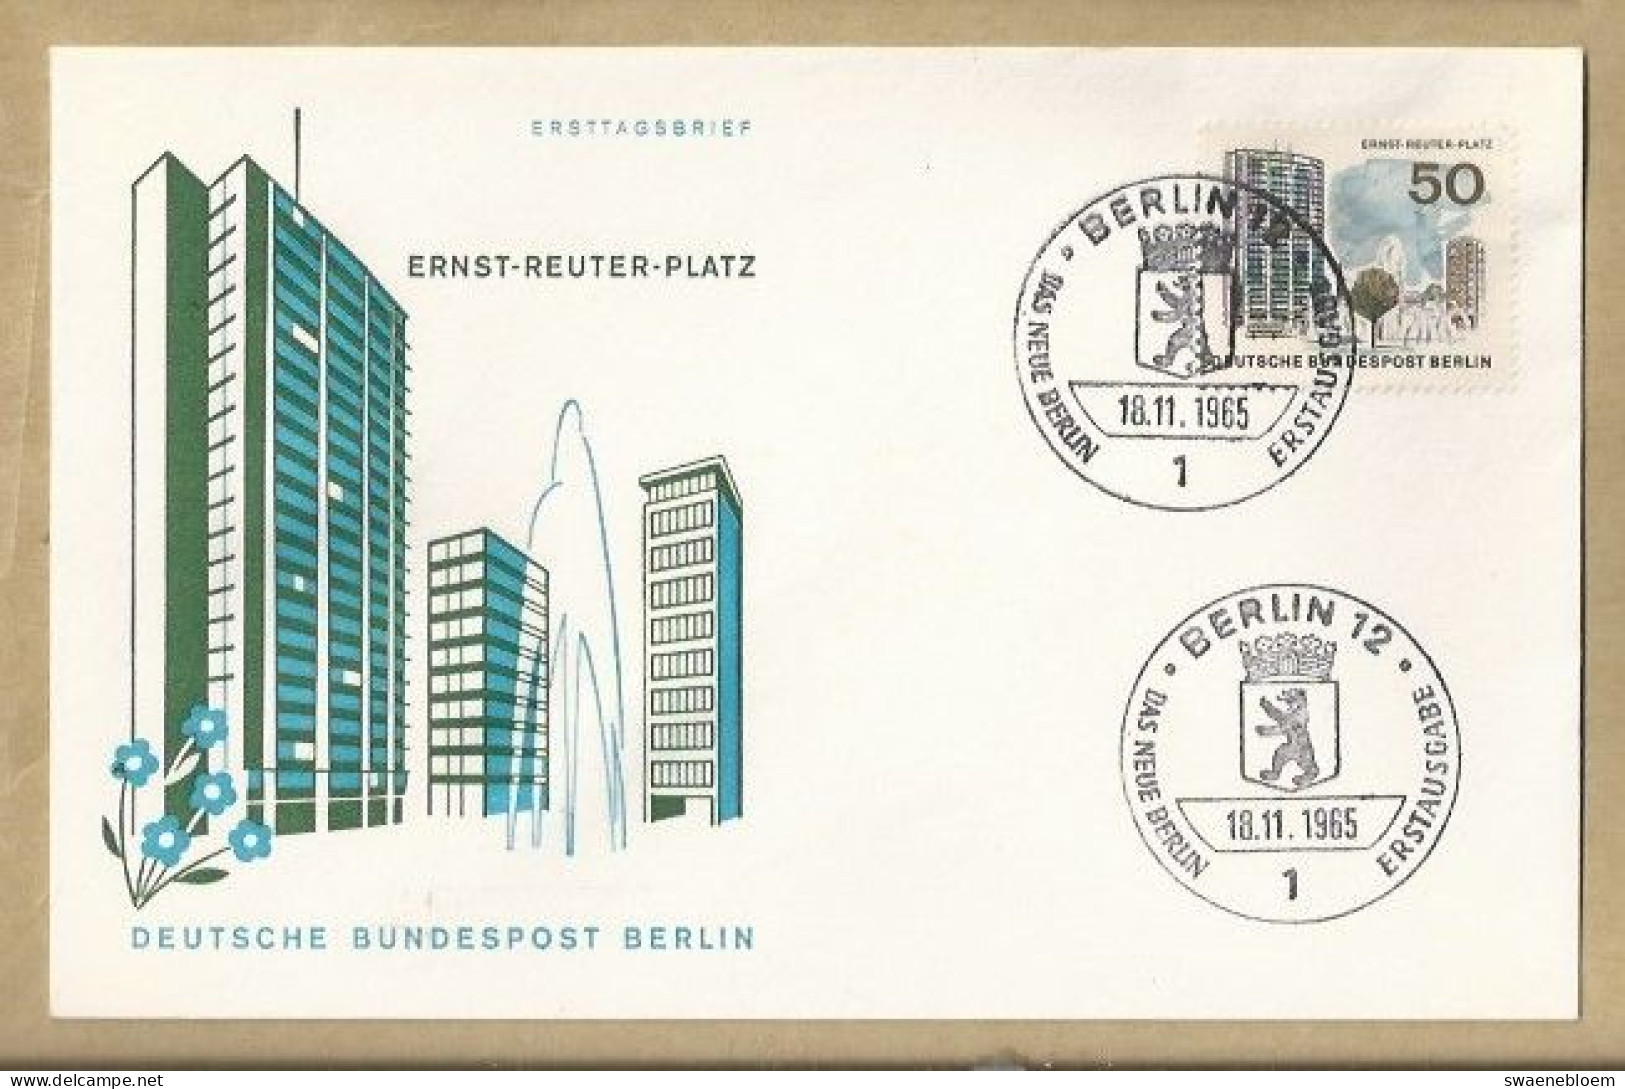 DE.- ERSTTAGSBRIEF. ERNST REUTER PLATZ. 18.11.1965. DEUTSCHEN BUNDESPOST BERLIN 12. ERSTAUSGABE. - 1948-1970